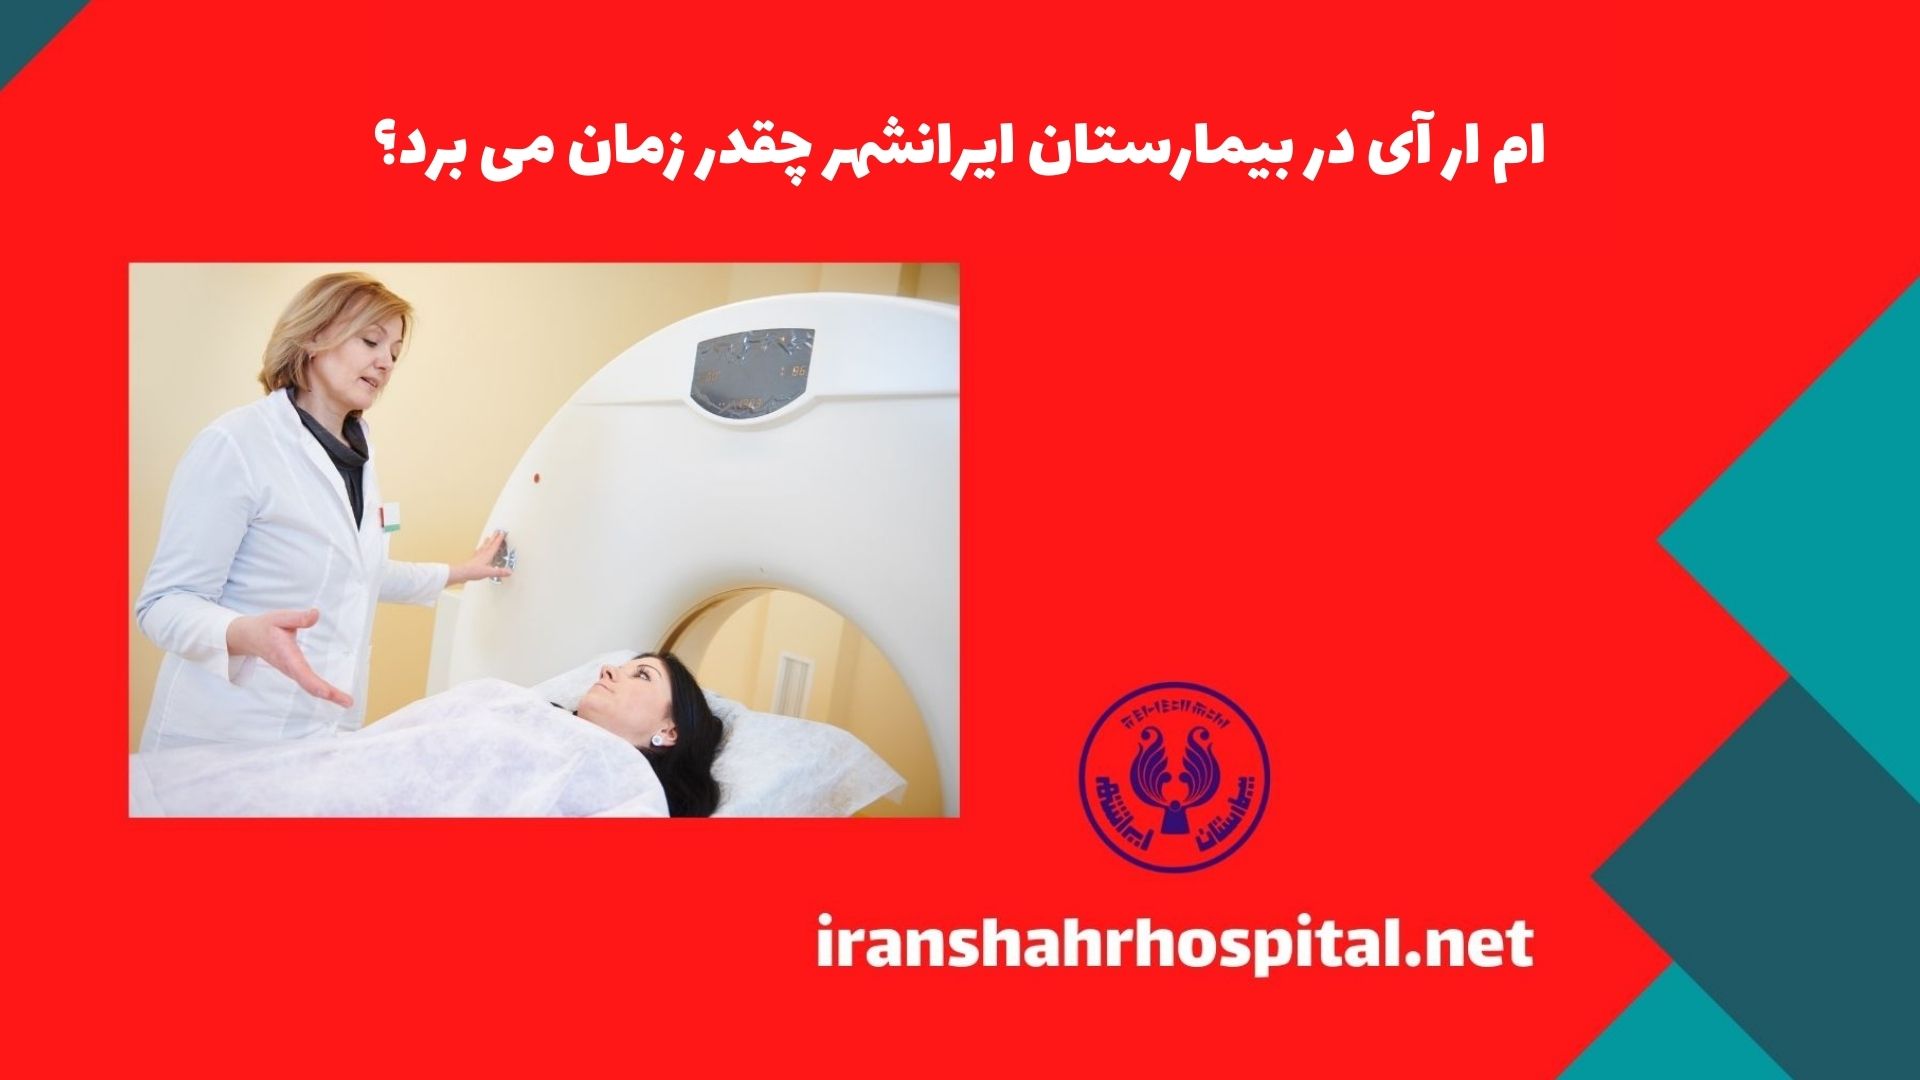 ام ار آی در بیمارستان ایرانشهر چقدر زمان می برد؟